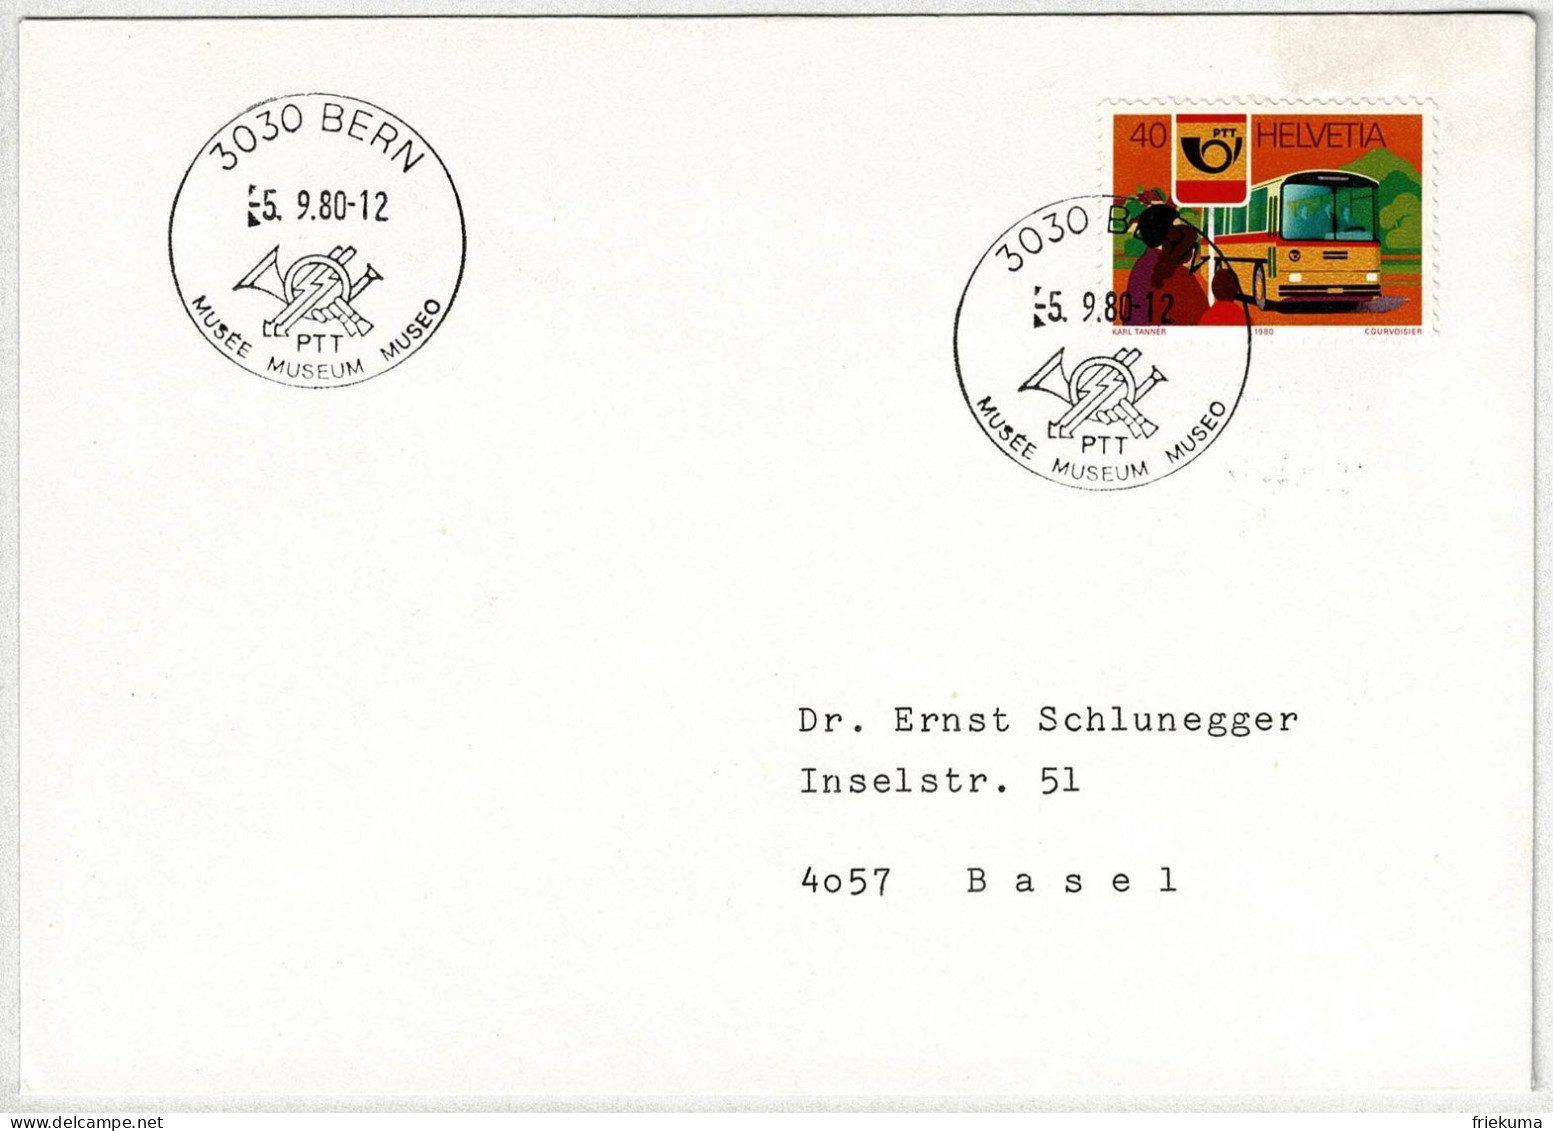 Schweiz / Helvetia 1980, Brief Museum PTT Bern - Basel, Postauto / Postbus Saurer - Busses